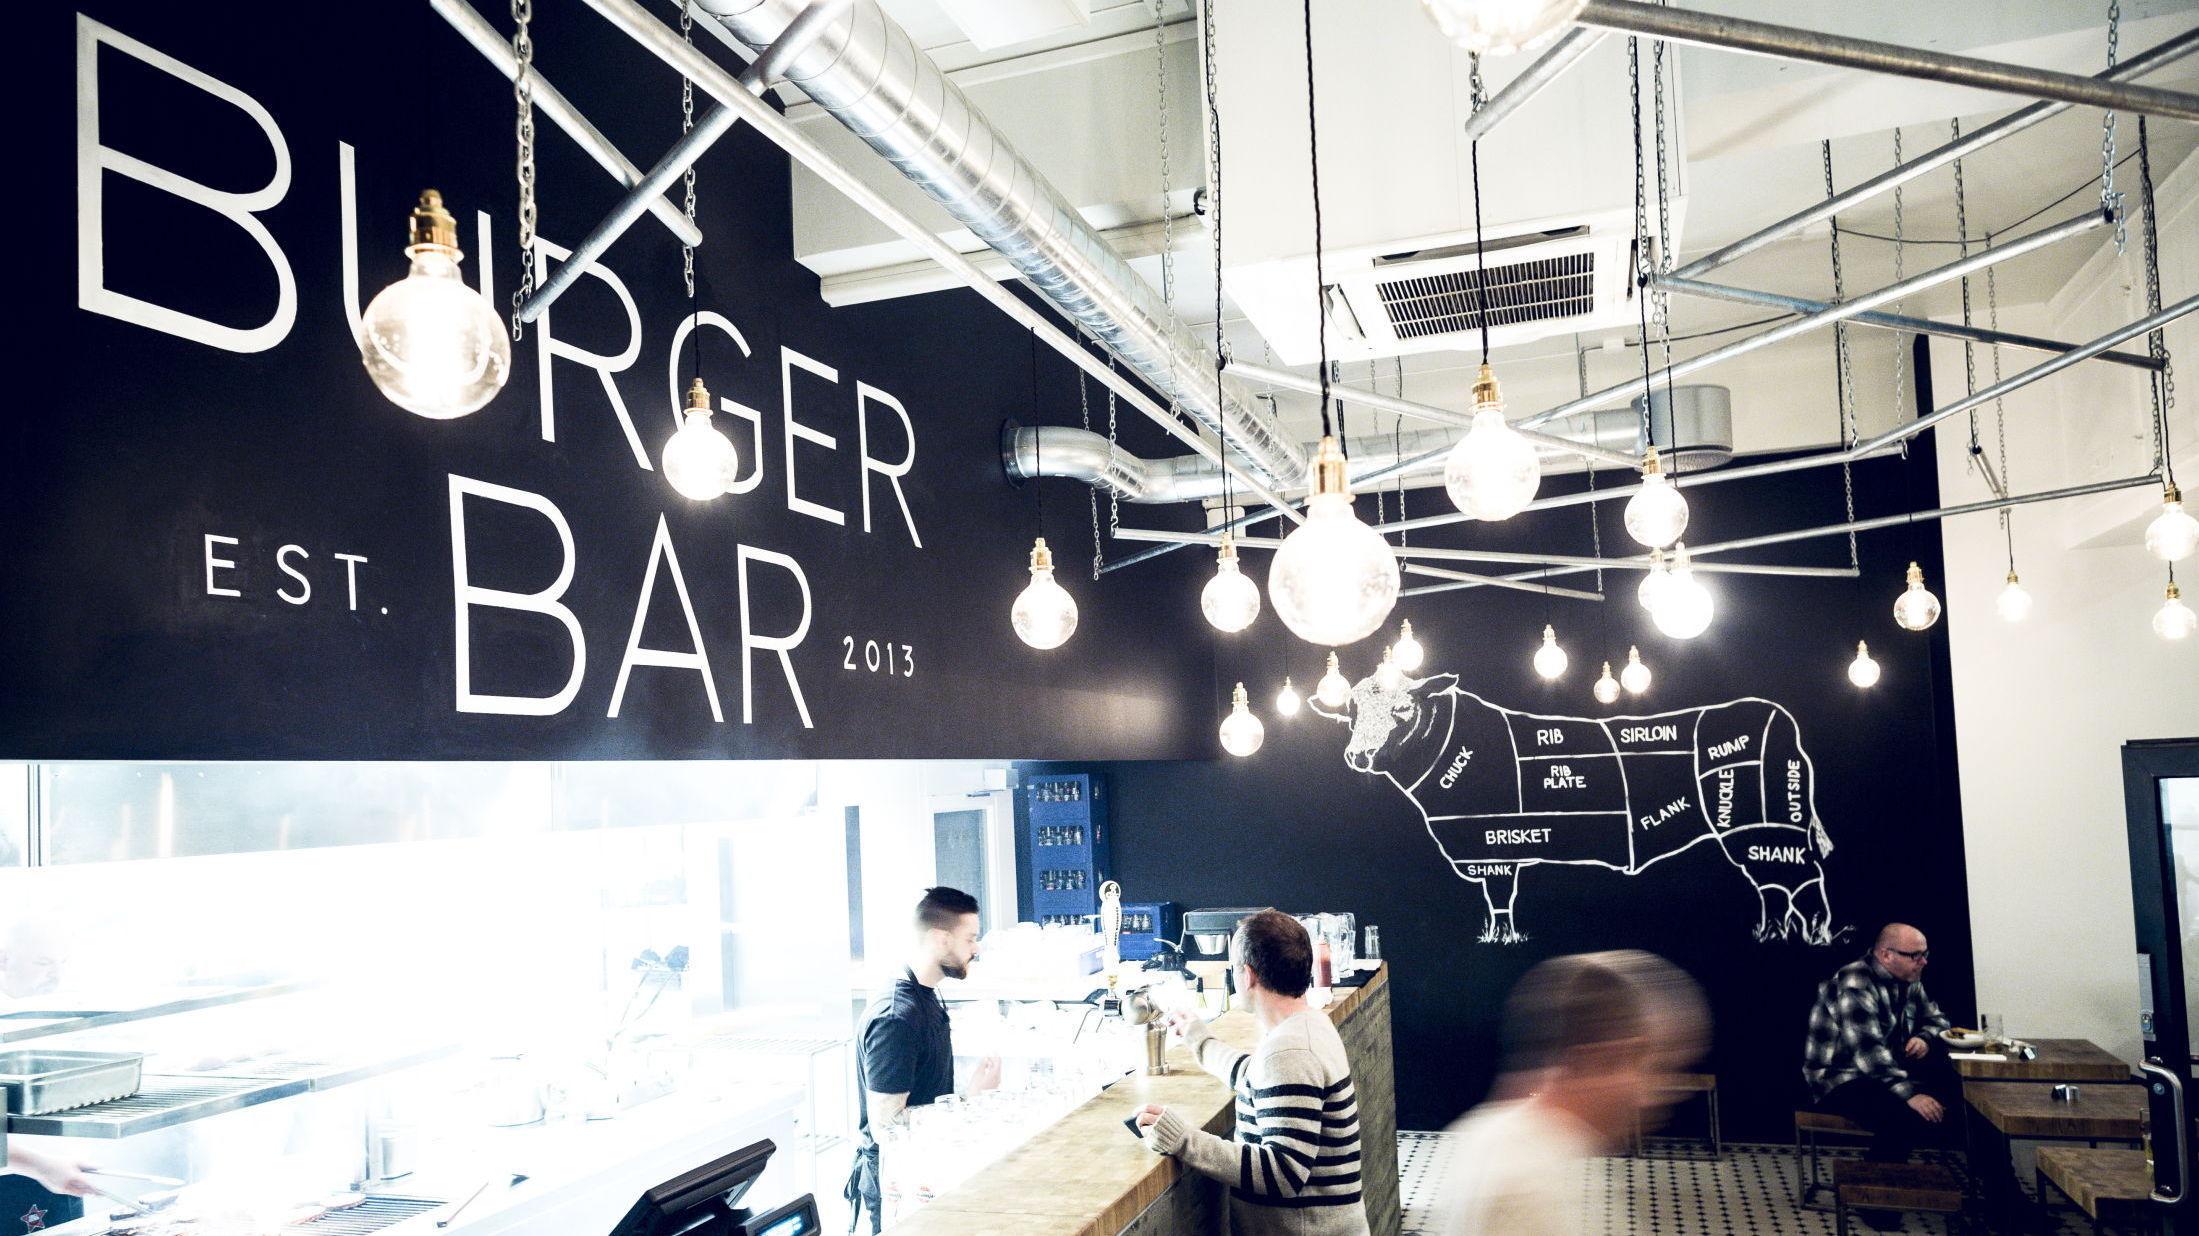 UNGDOMMELIG: På Burger Bar ved Youngstorget er interiøret tegnet av Snøhetta og det er en ungdommelig og kul atmosfære. Foto: Krister Sørbø/VG